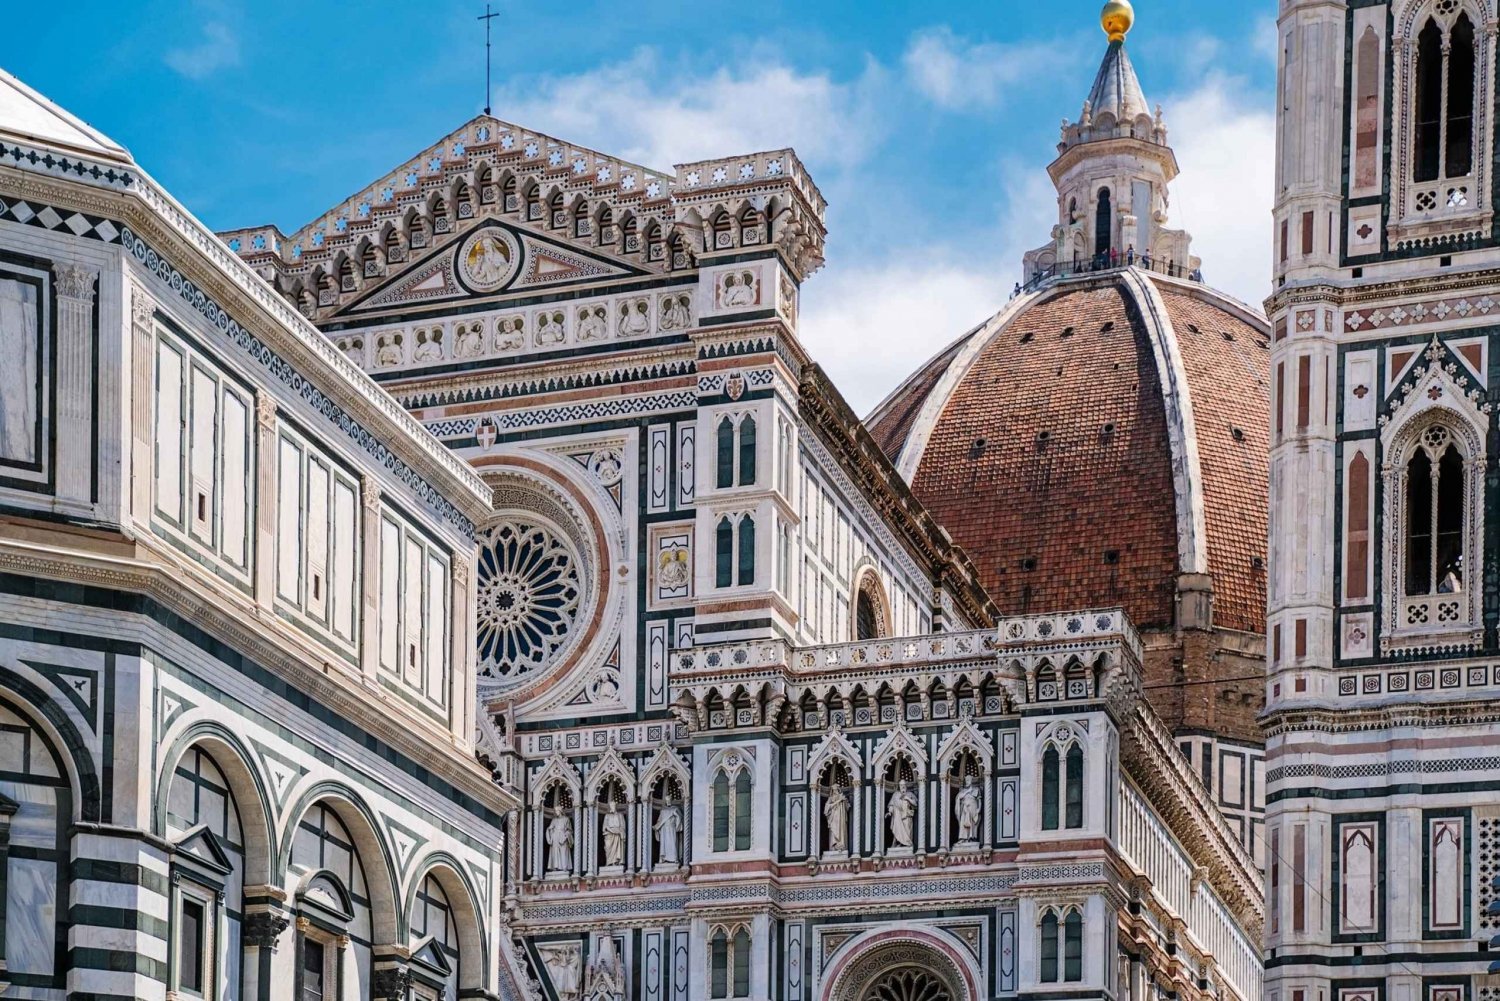 Florencja: Wycieczka po Duomo z biletem wstępu na wieżę Giotta